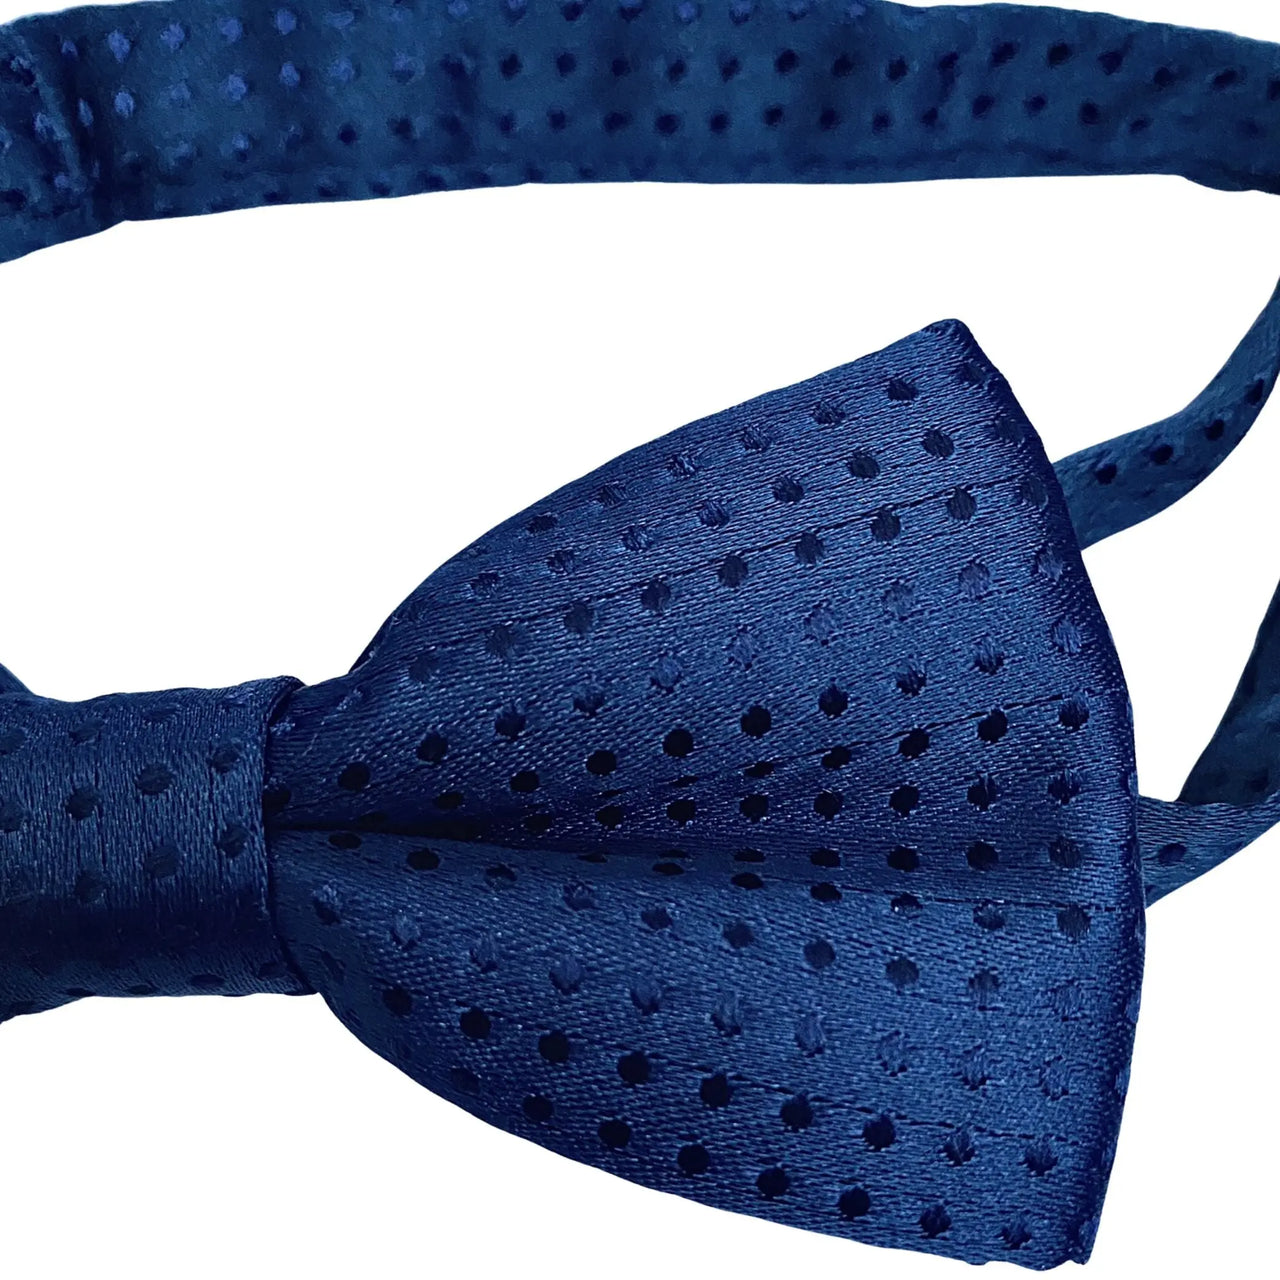 Corbata Moño Polka Dot Azul Marino % elbauldecleo %